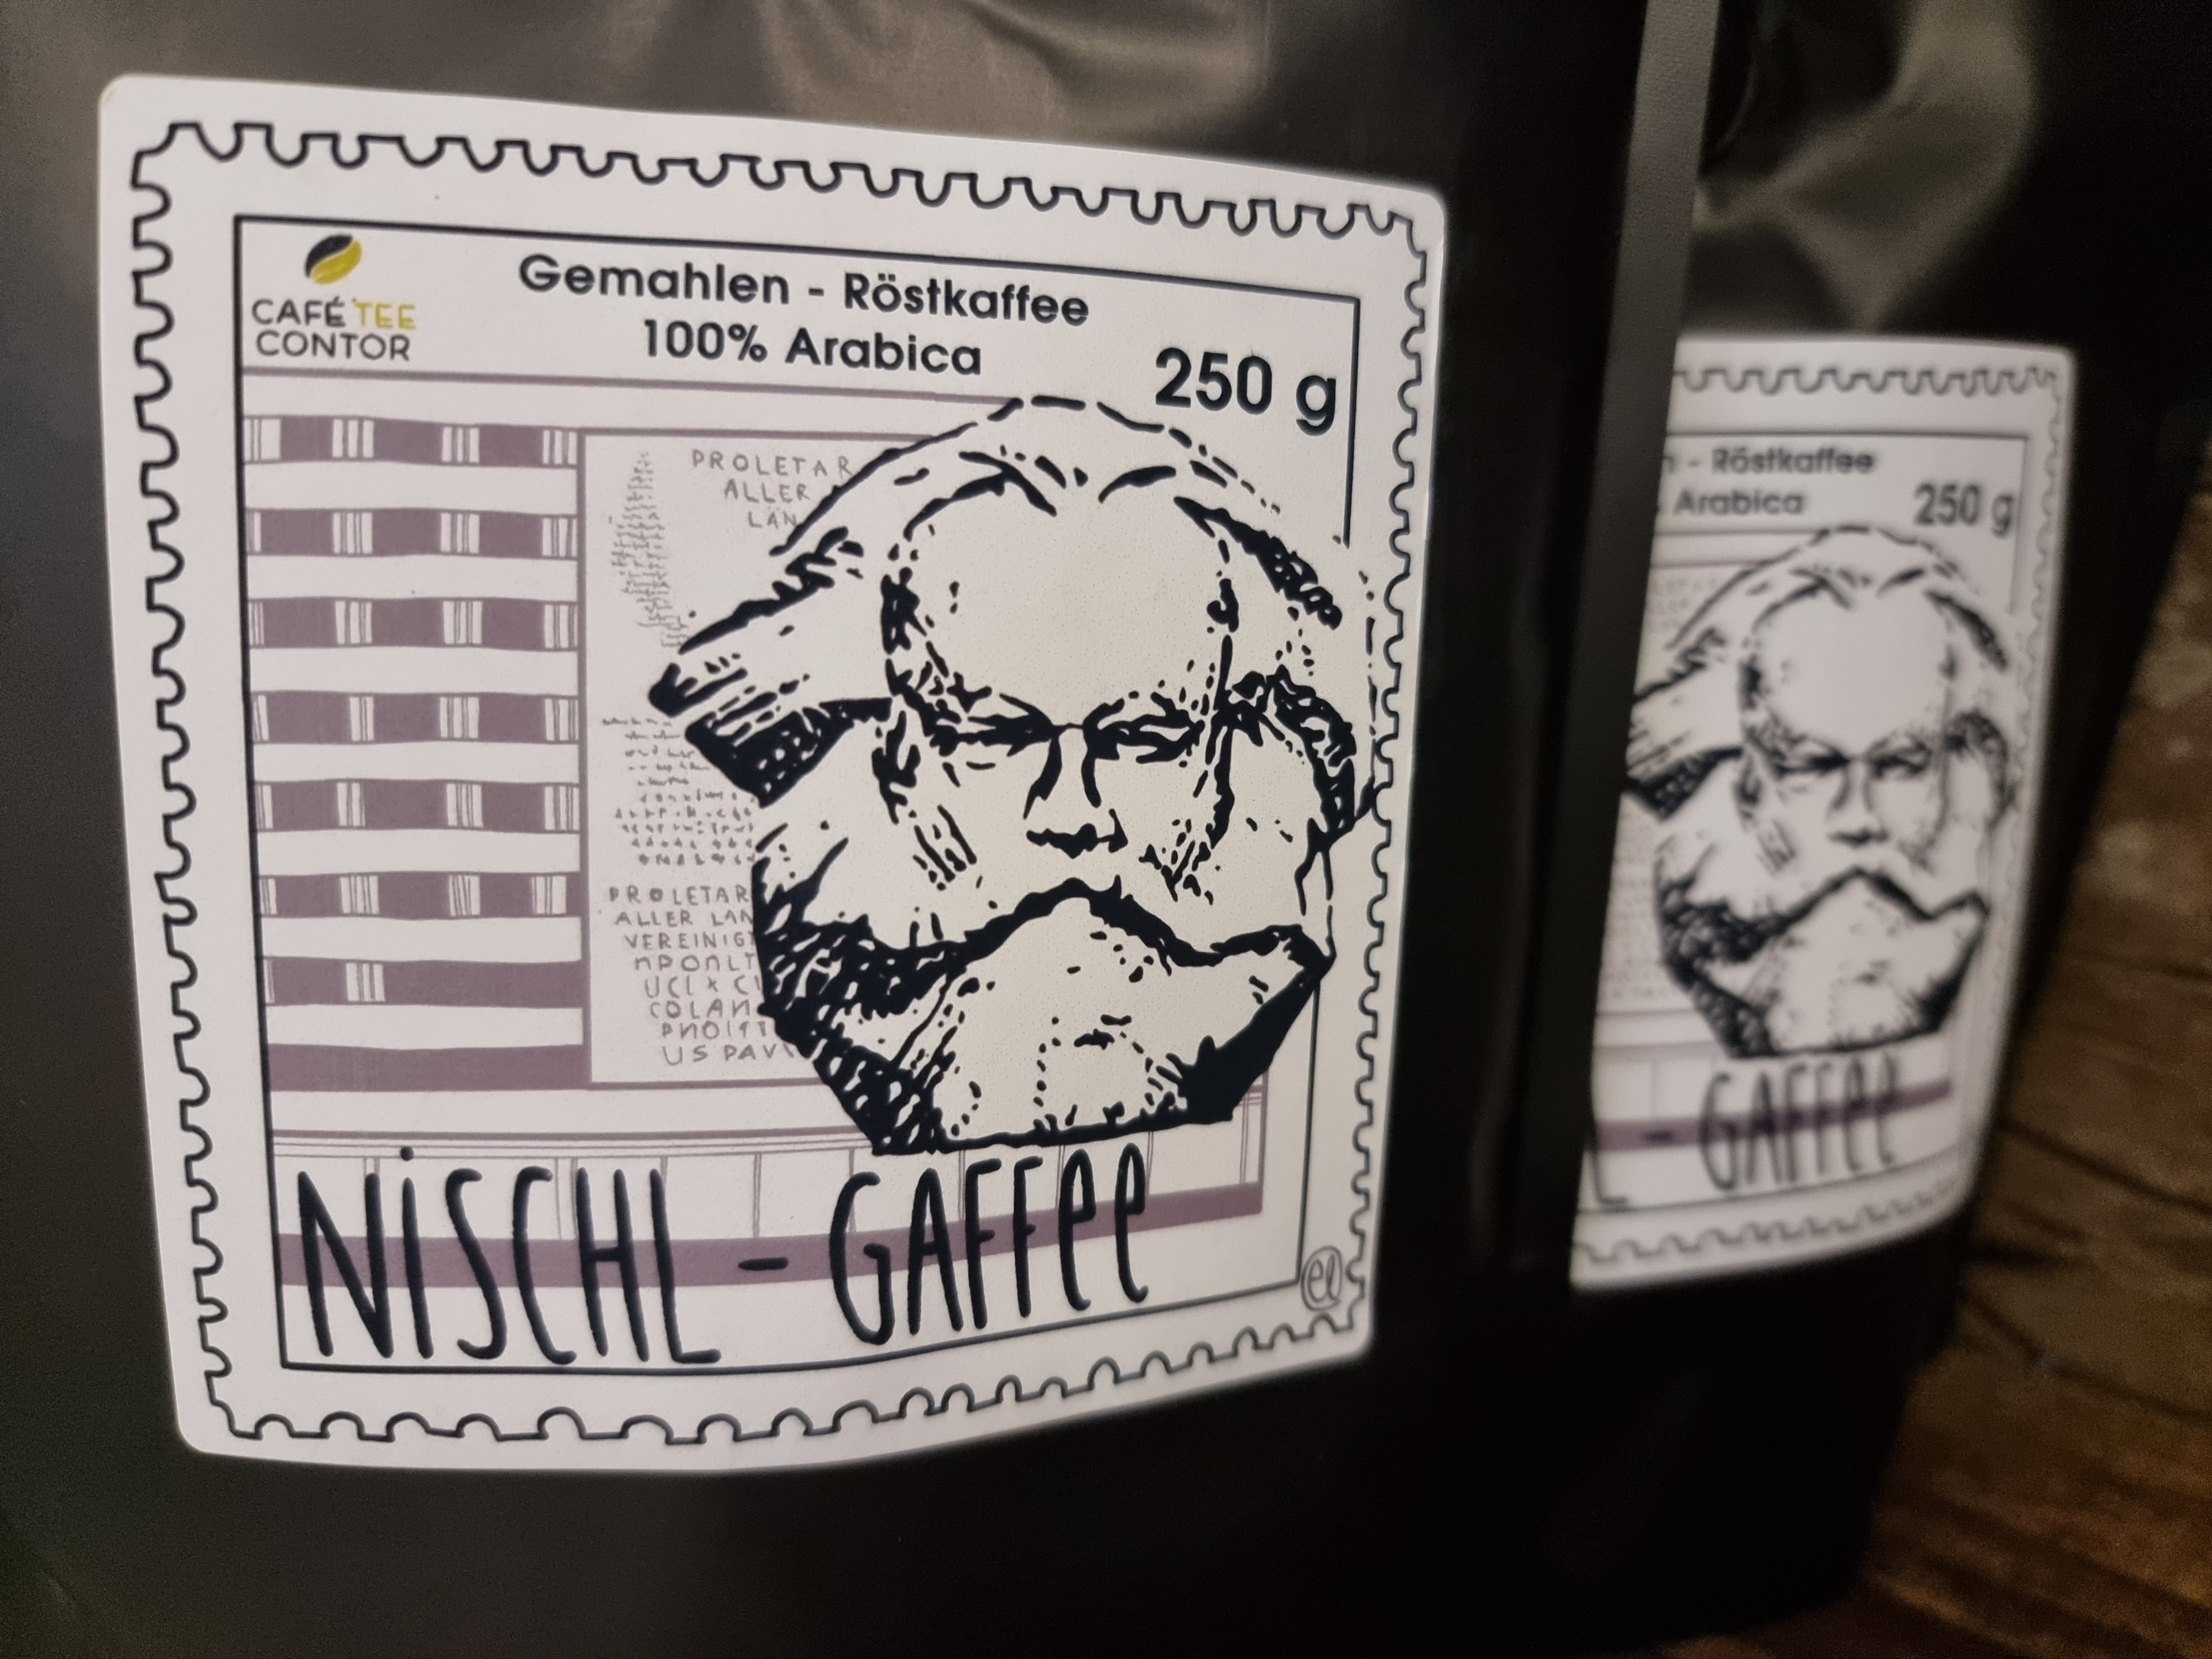 Kaffee Gourmet-Mischung "Nischl Gaffee" Chemnitz Edition